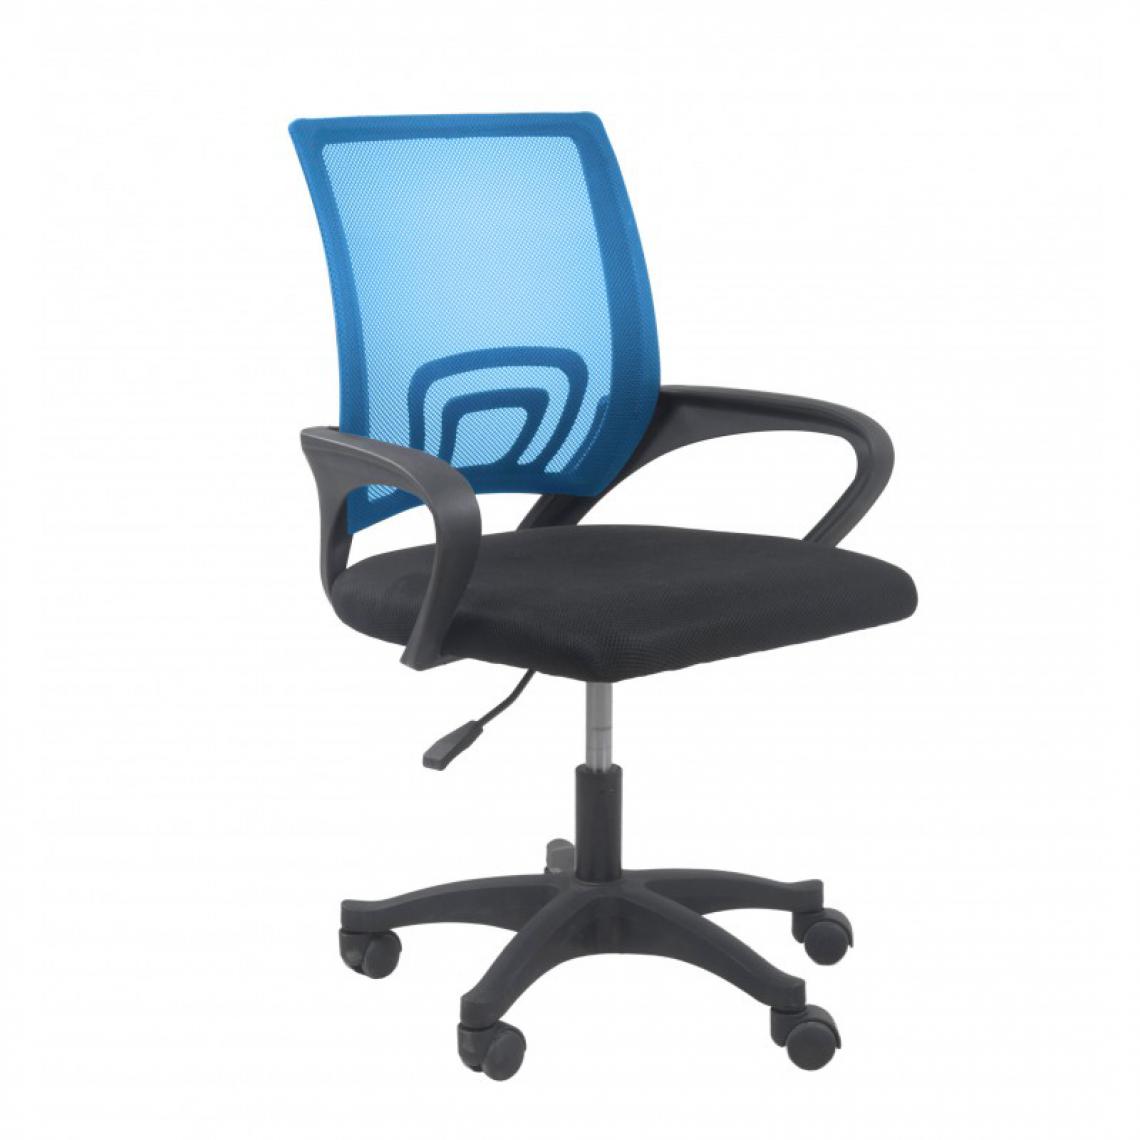 Hucoco - CARISE - Fauteuil de bureau ergonomique - Hauteur ajustable - Avec accoudoirs - Chaise de bureau pivotante - Bleu - Chaises